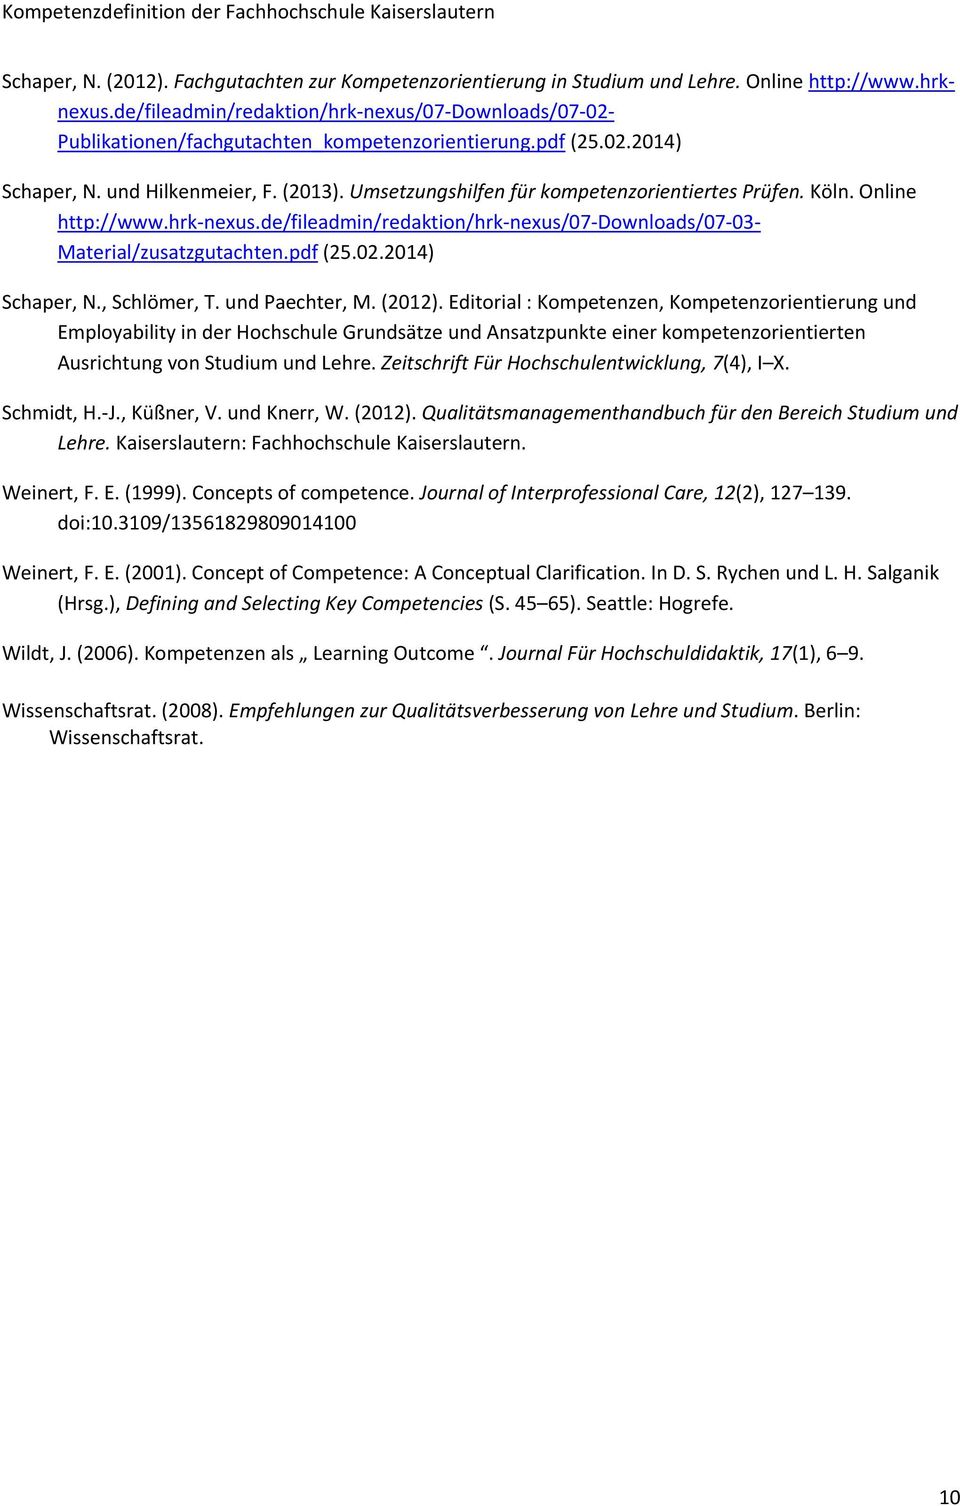 Umsetzungshilfen für kompetenzorientiertes Prüfen. Köln. Online http://www.hrk nexus.de/fileadmin/redaktion/hrk nexus/07 Downloads/07 03 Material/zusatzgutachten.pdf (25.02.2014) Schaper, N.